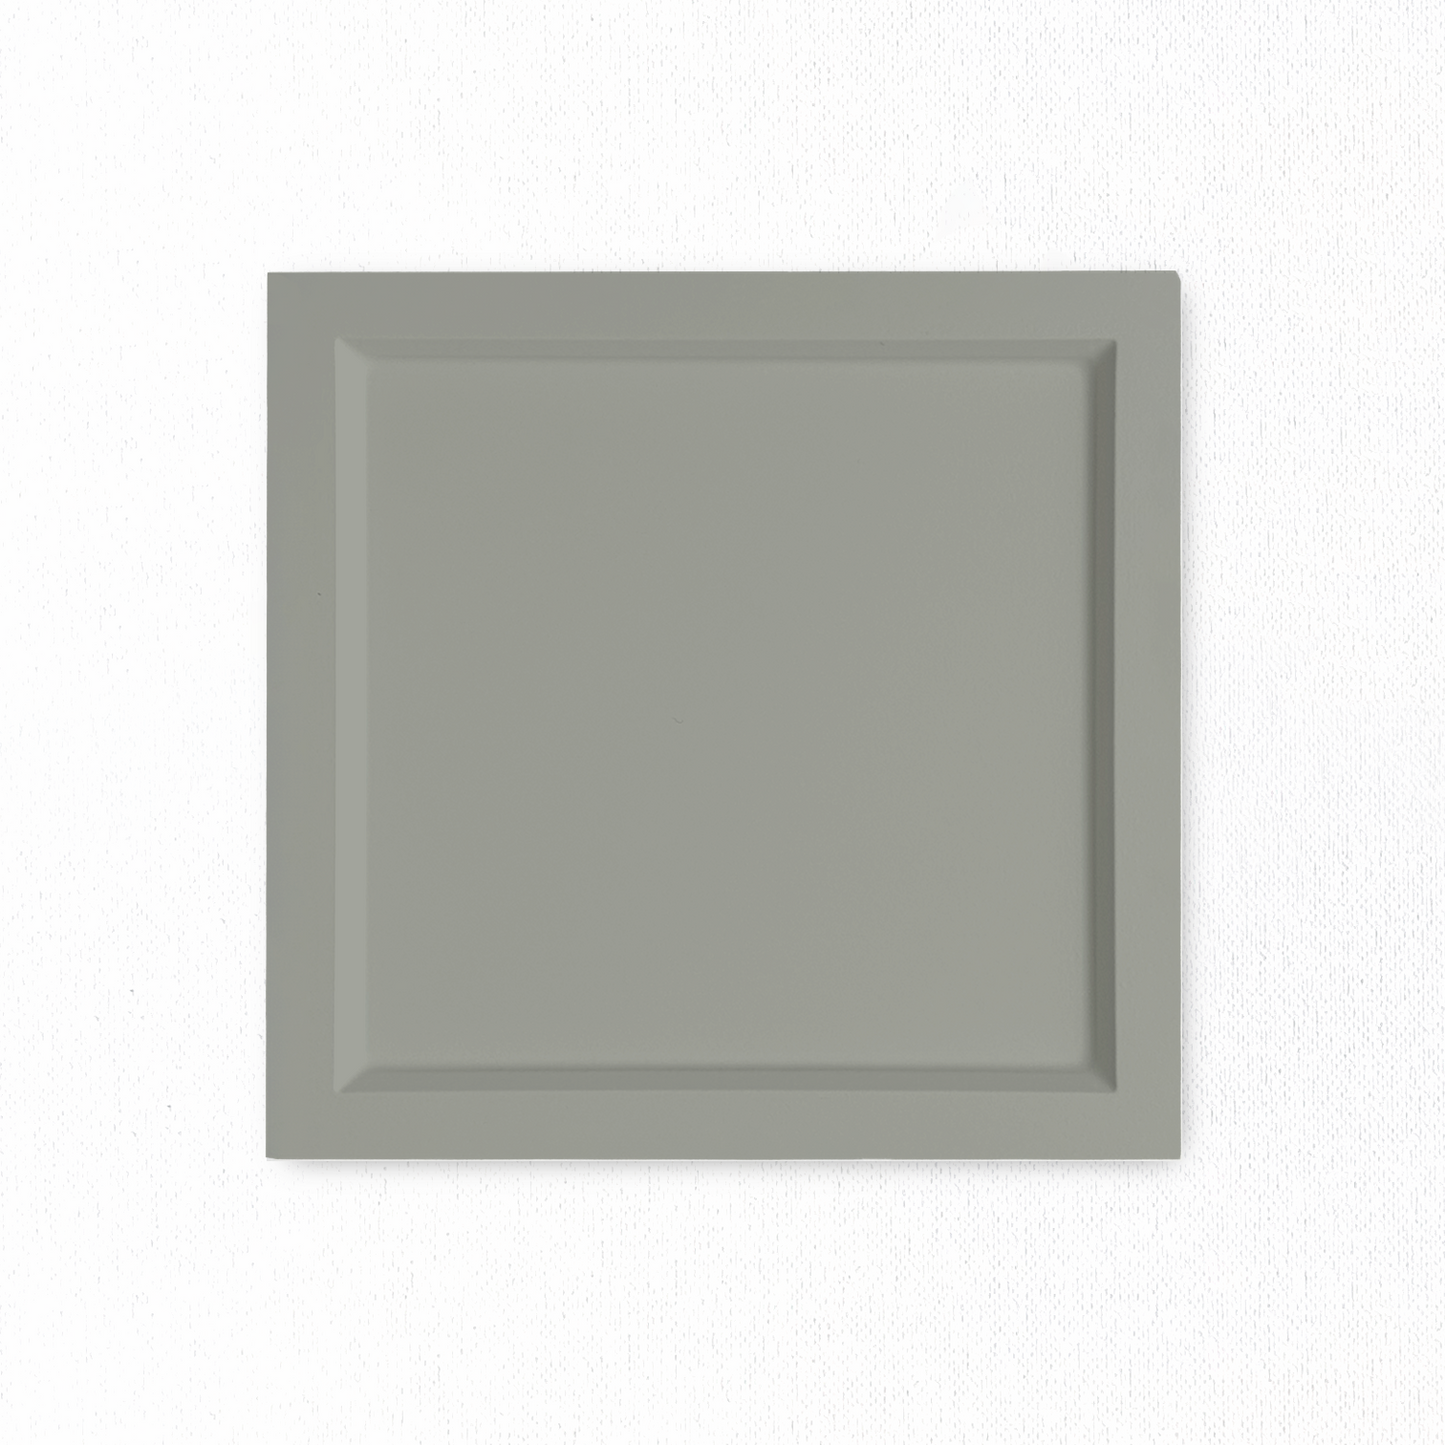 6.5" x 6.5" Revere Grey Outline Sample